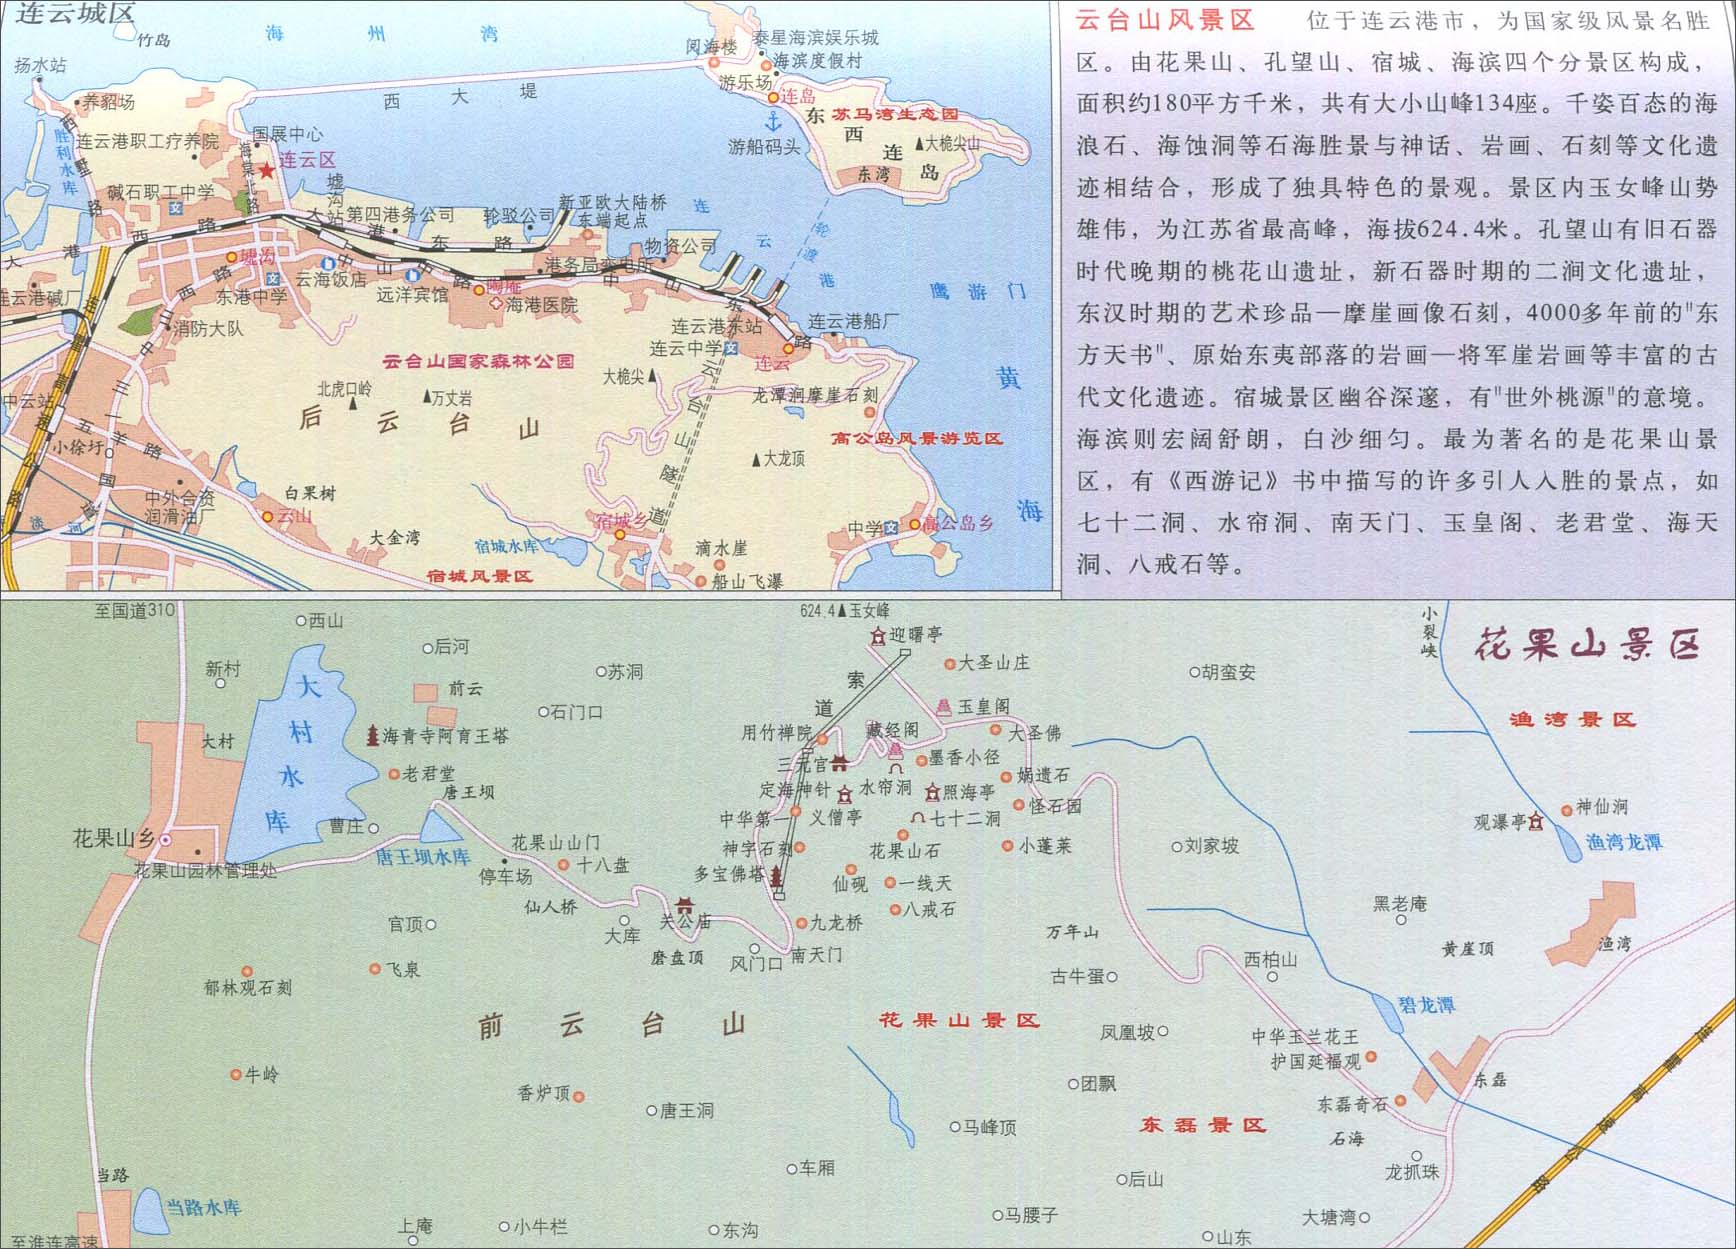 中国地图 江苏 连云港 >> 花果山景区地图   图片